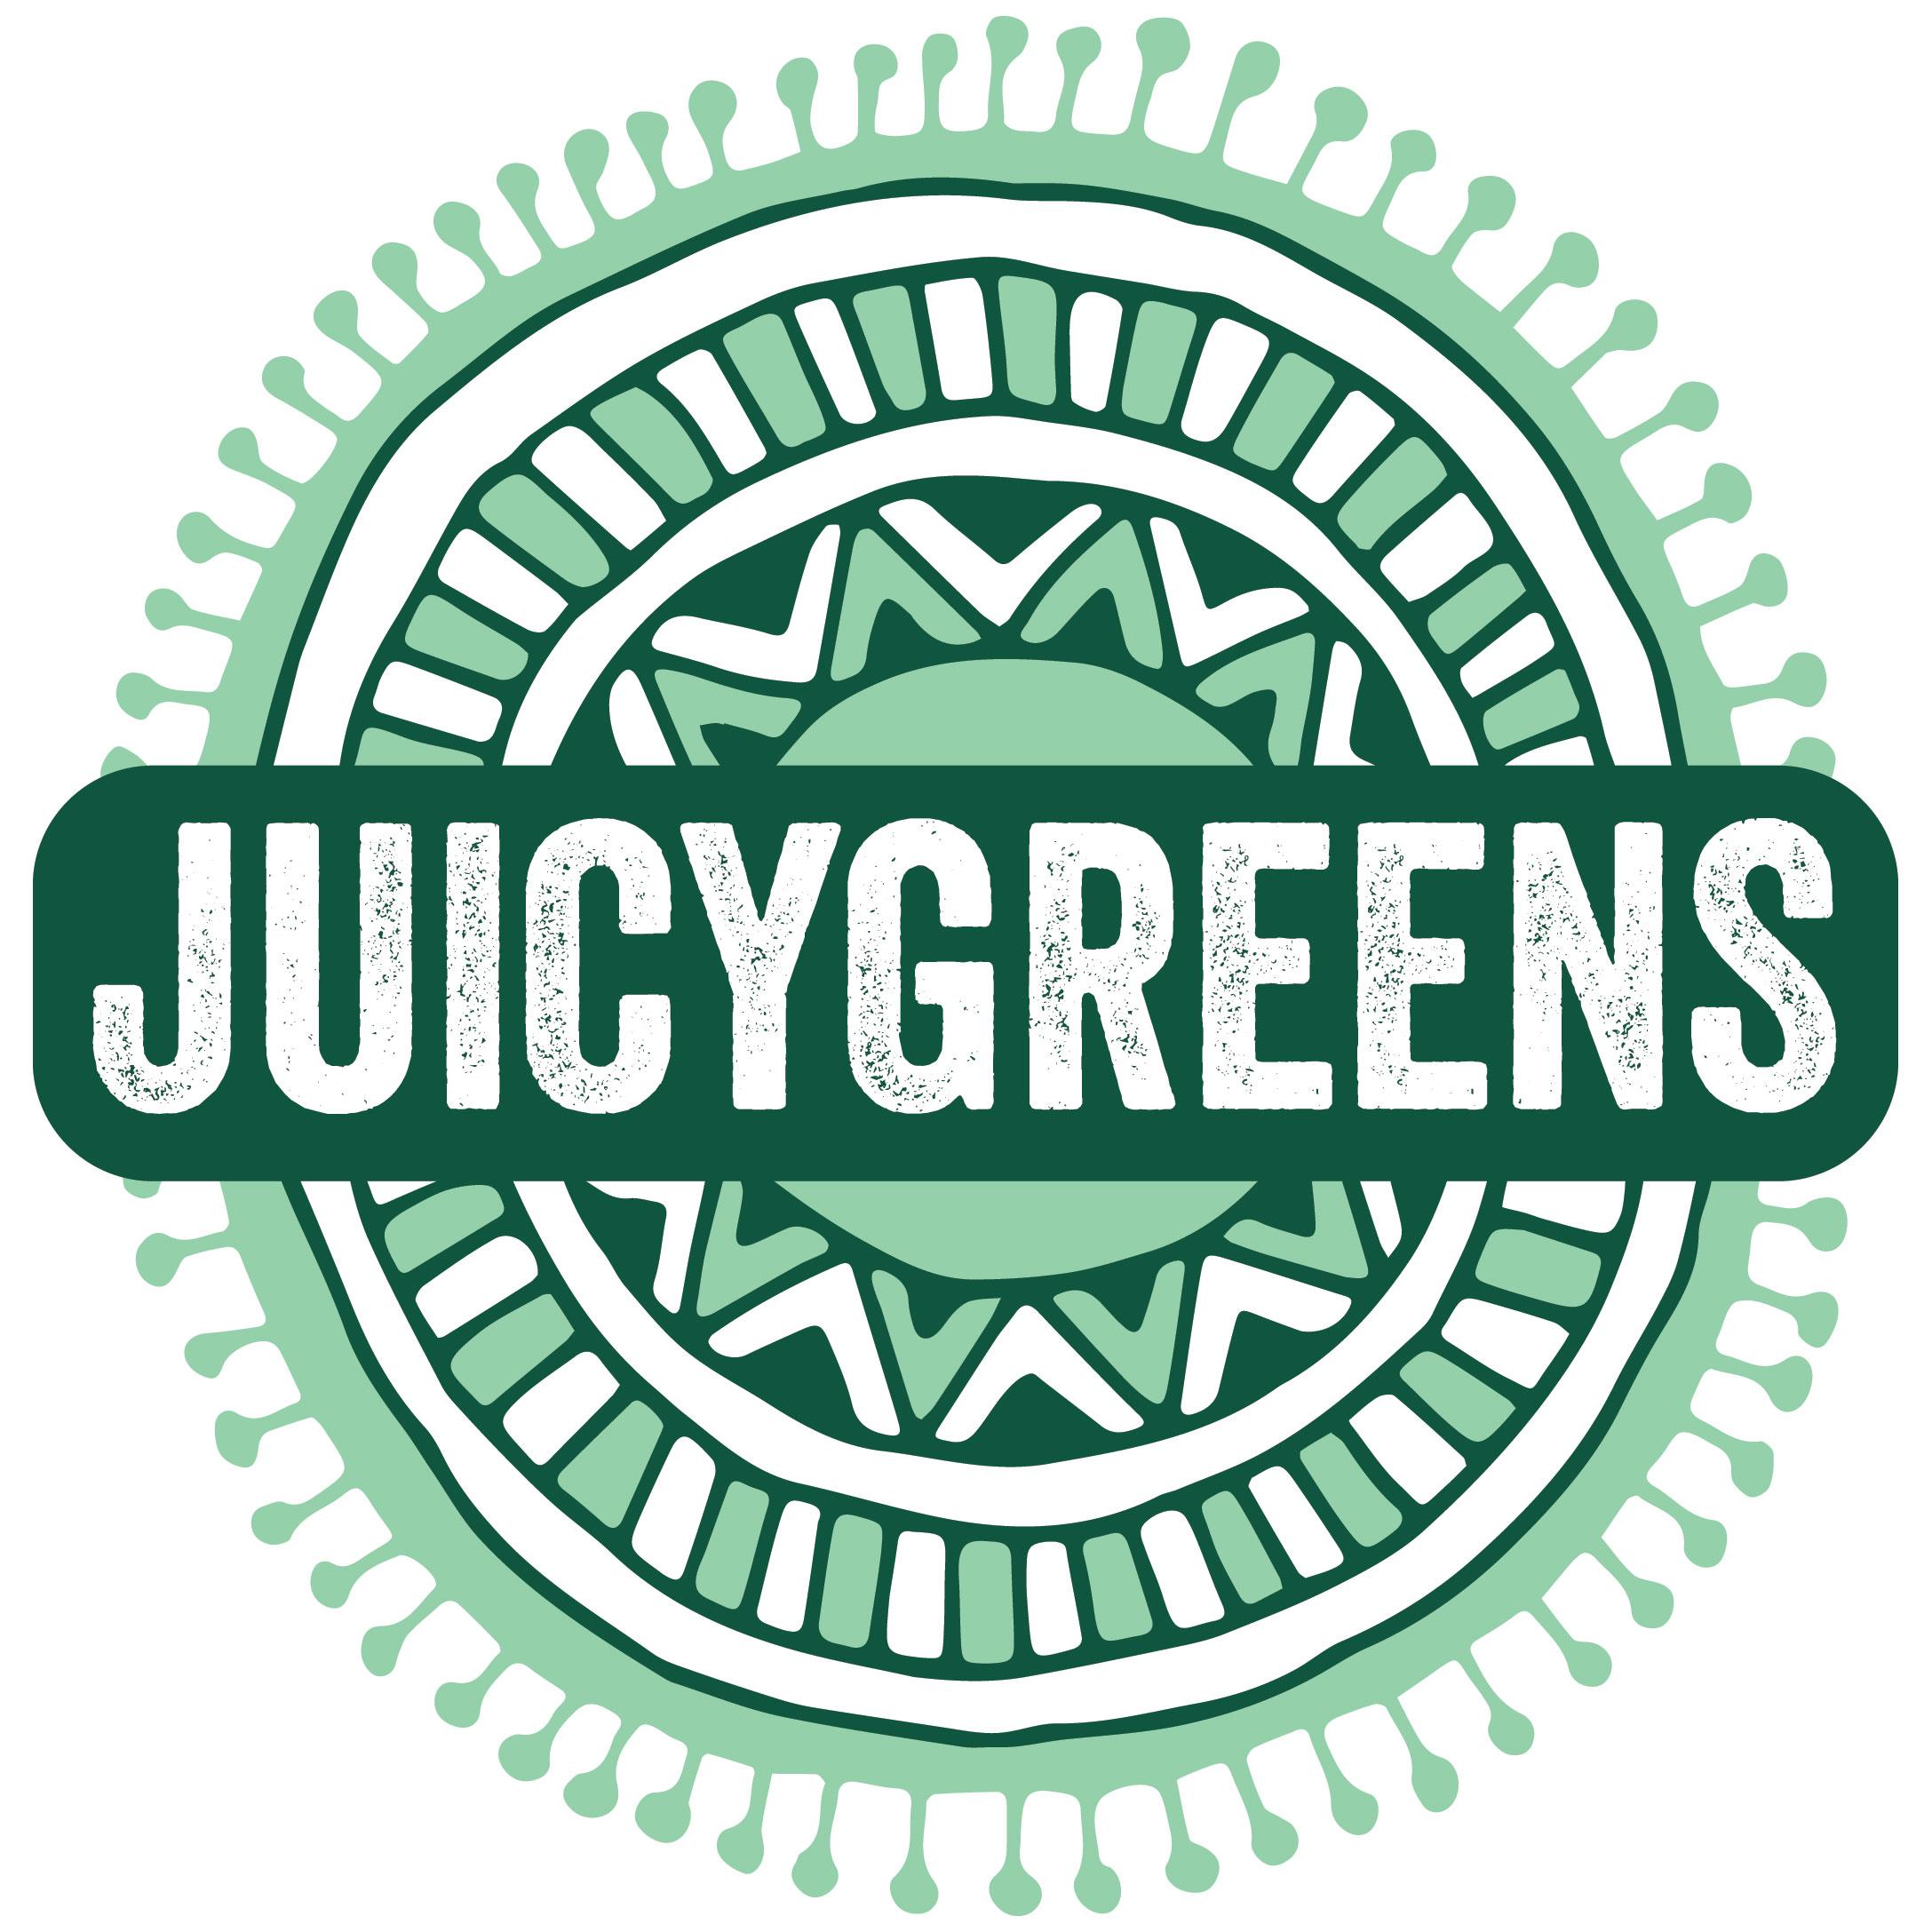 Juicygreens - Assembly Row